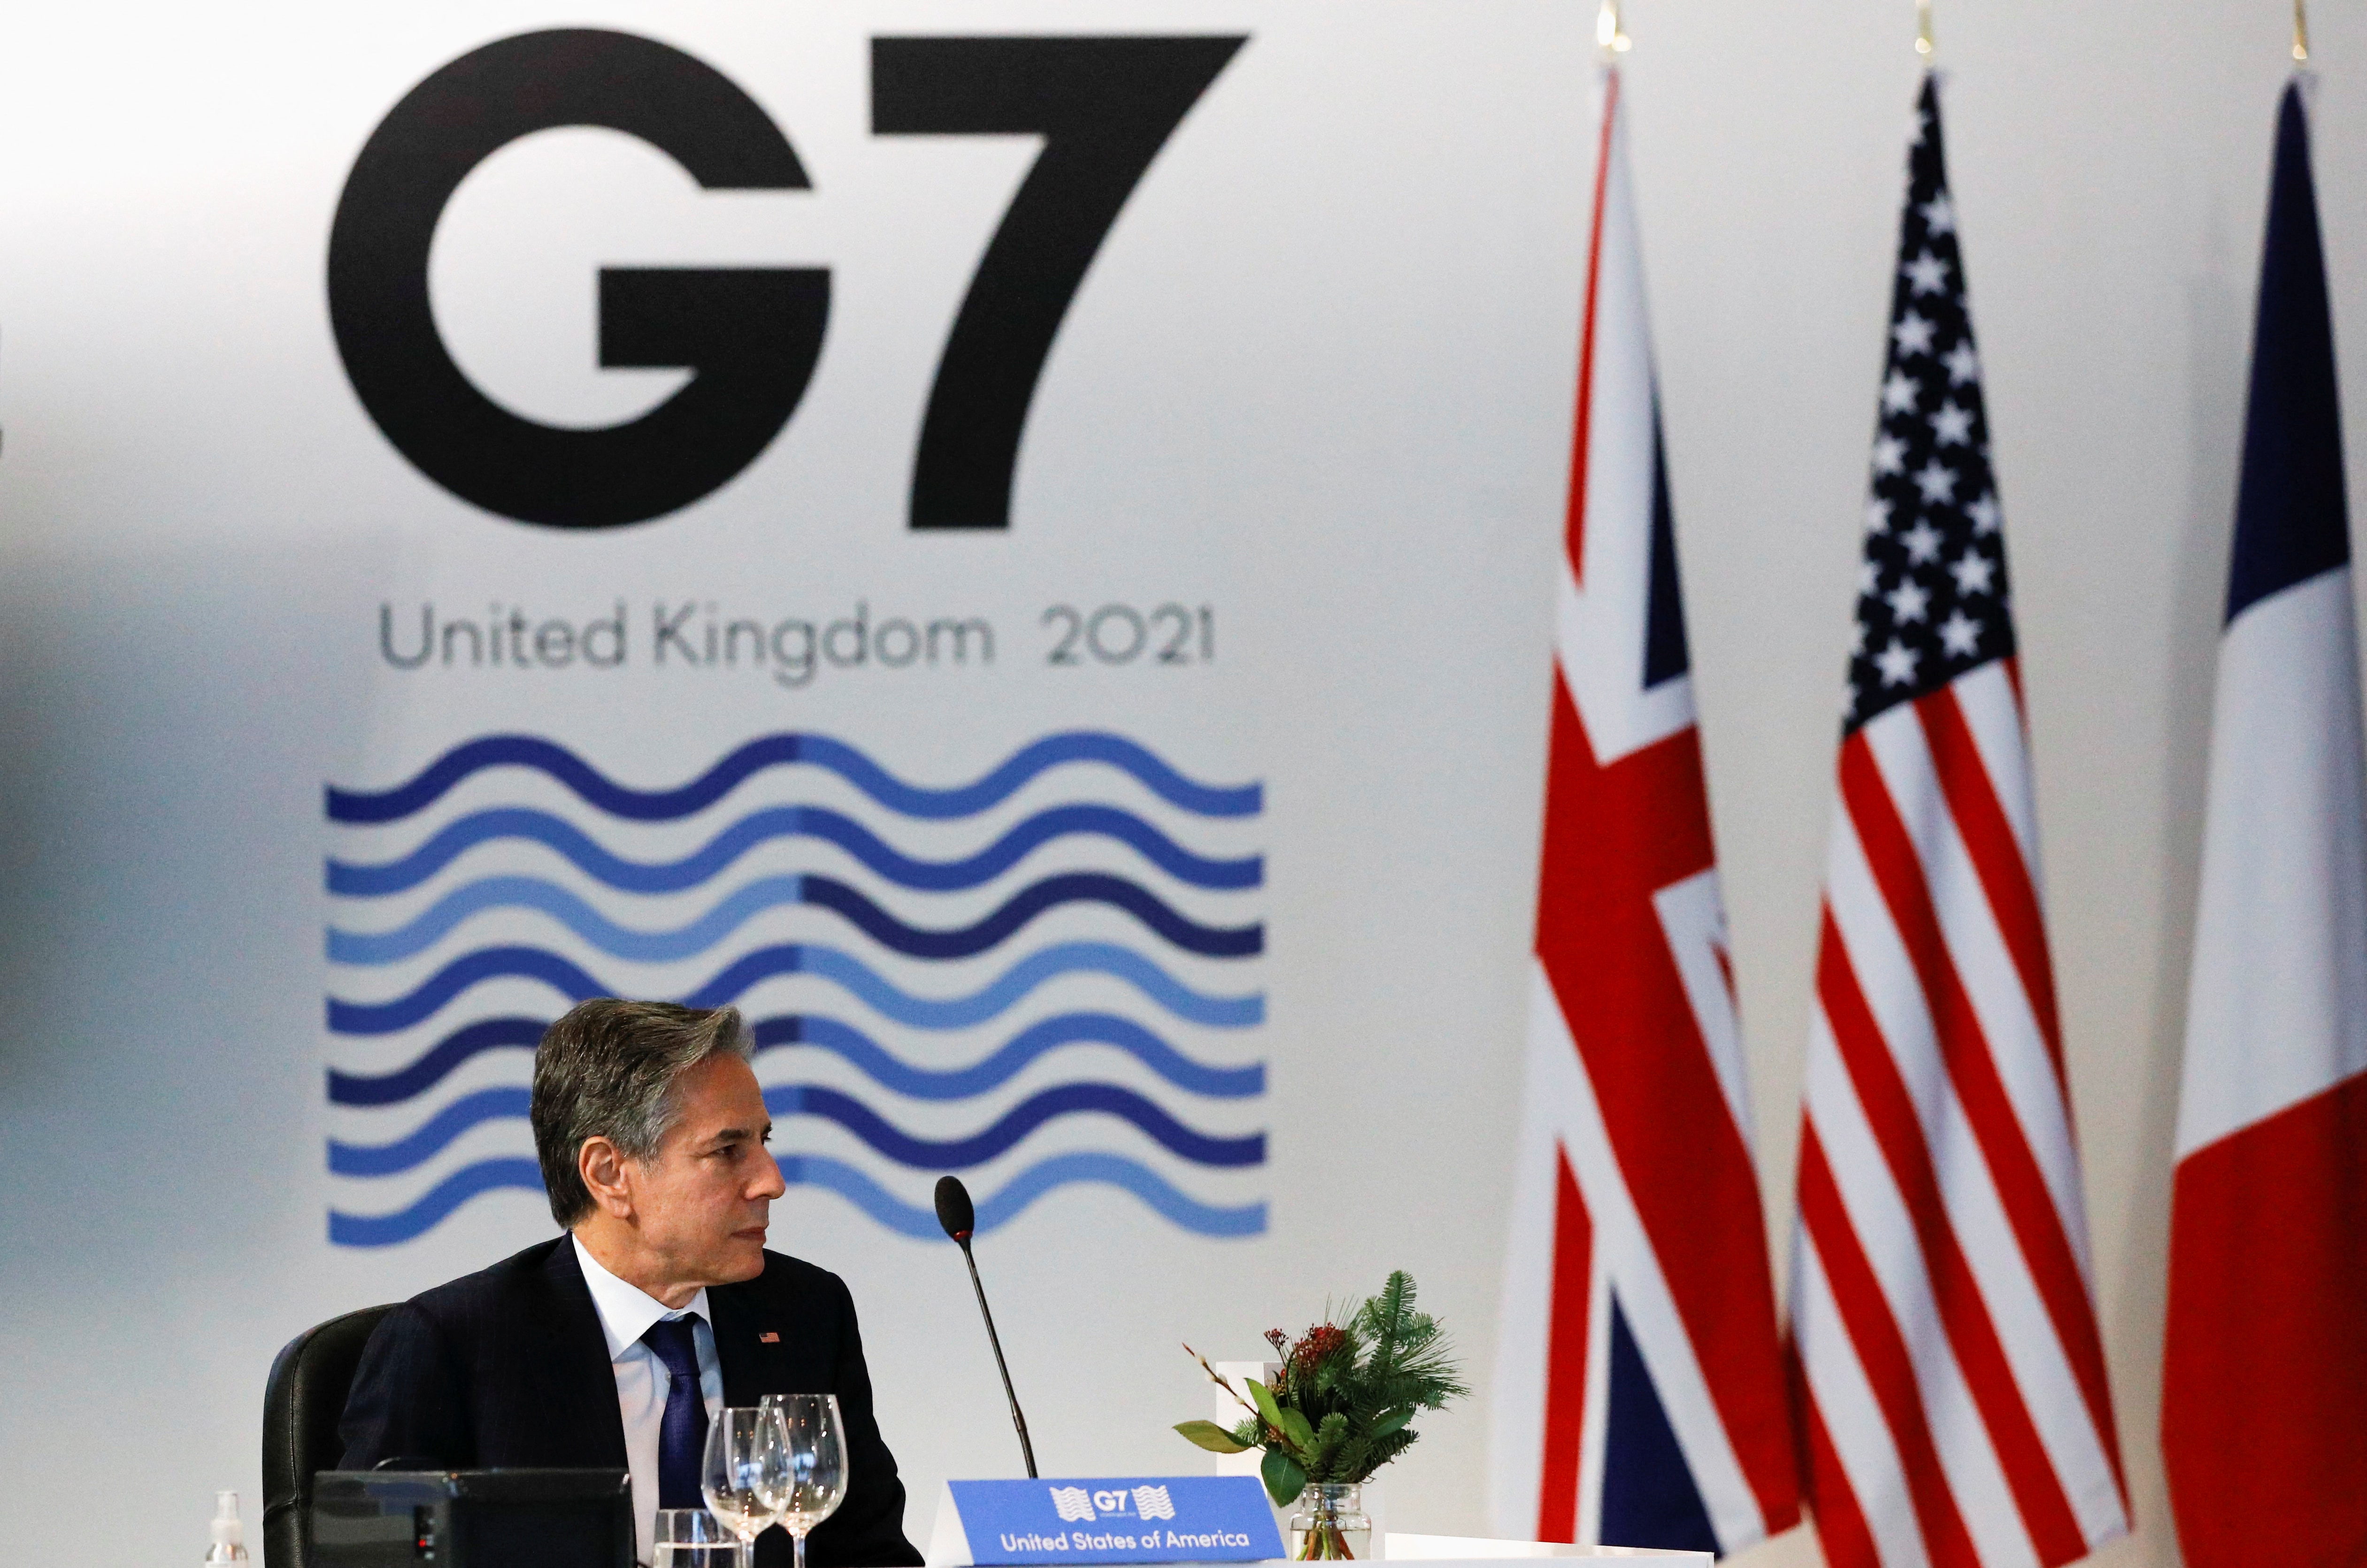 Blinkin sa zúčastňuje stretnutia G7 na jednotnom fronte proti „nepriateľským aktérom“ uprostred obáv z konfliktu medzi Ruskom a Ukrajinou